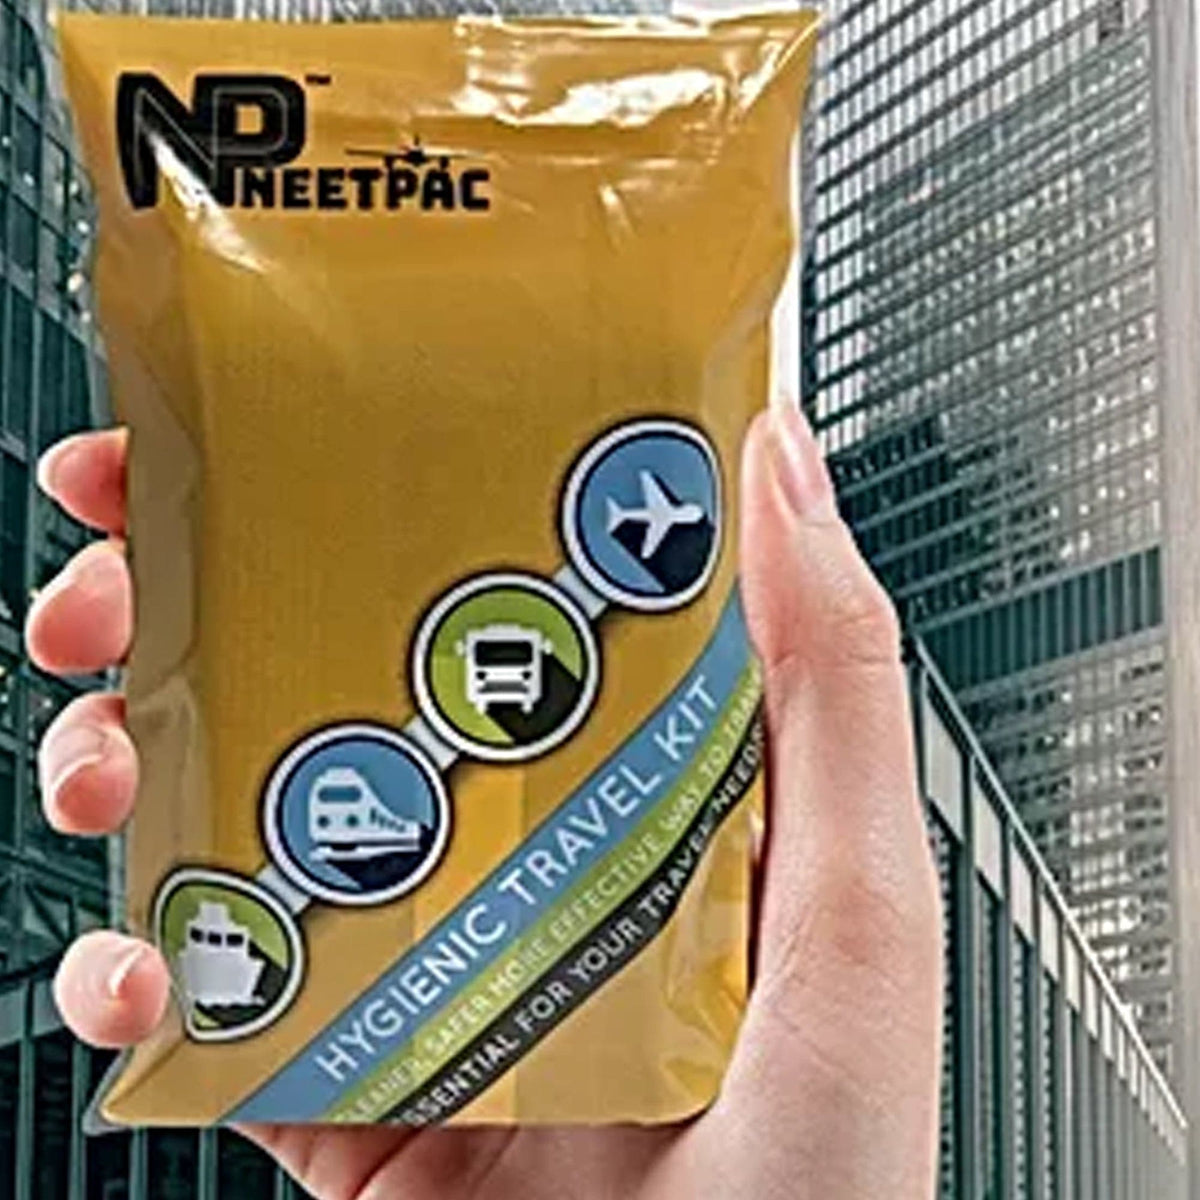 NeetPac Hygienic Travel Kit